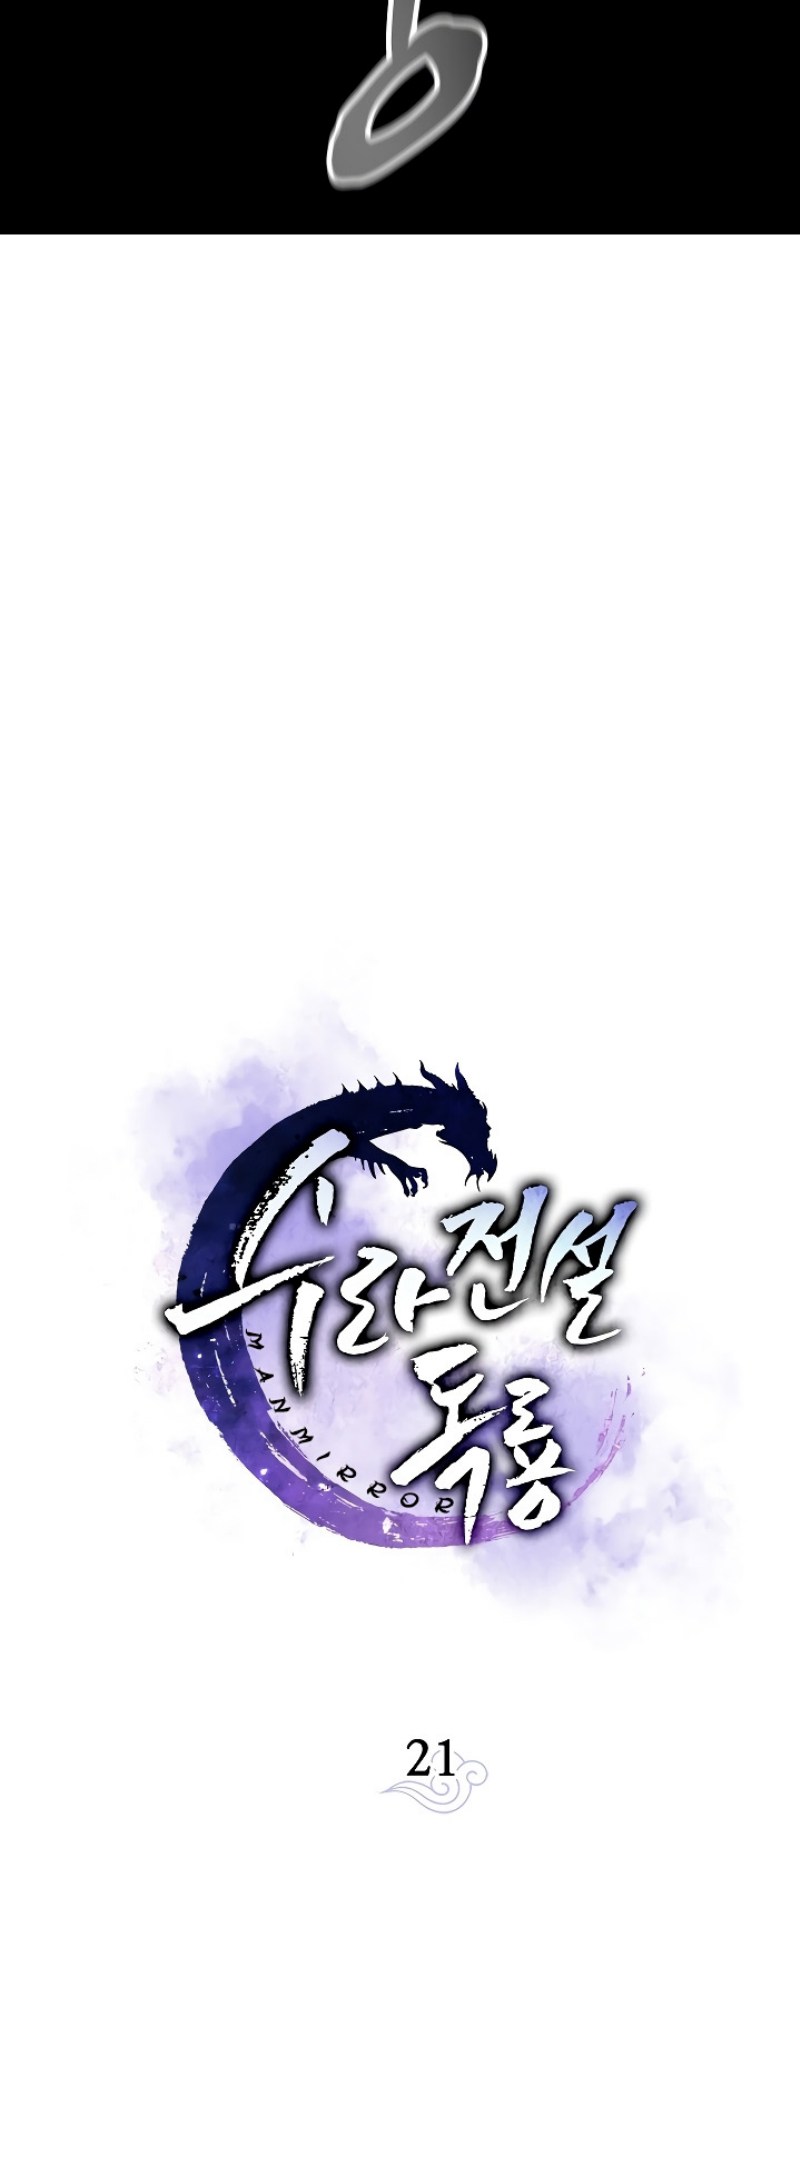 Legend of Asura – The Venom Dragon 21 (25)